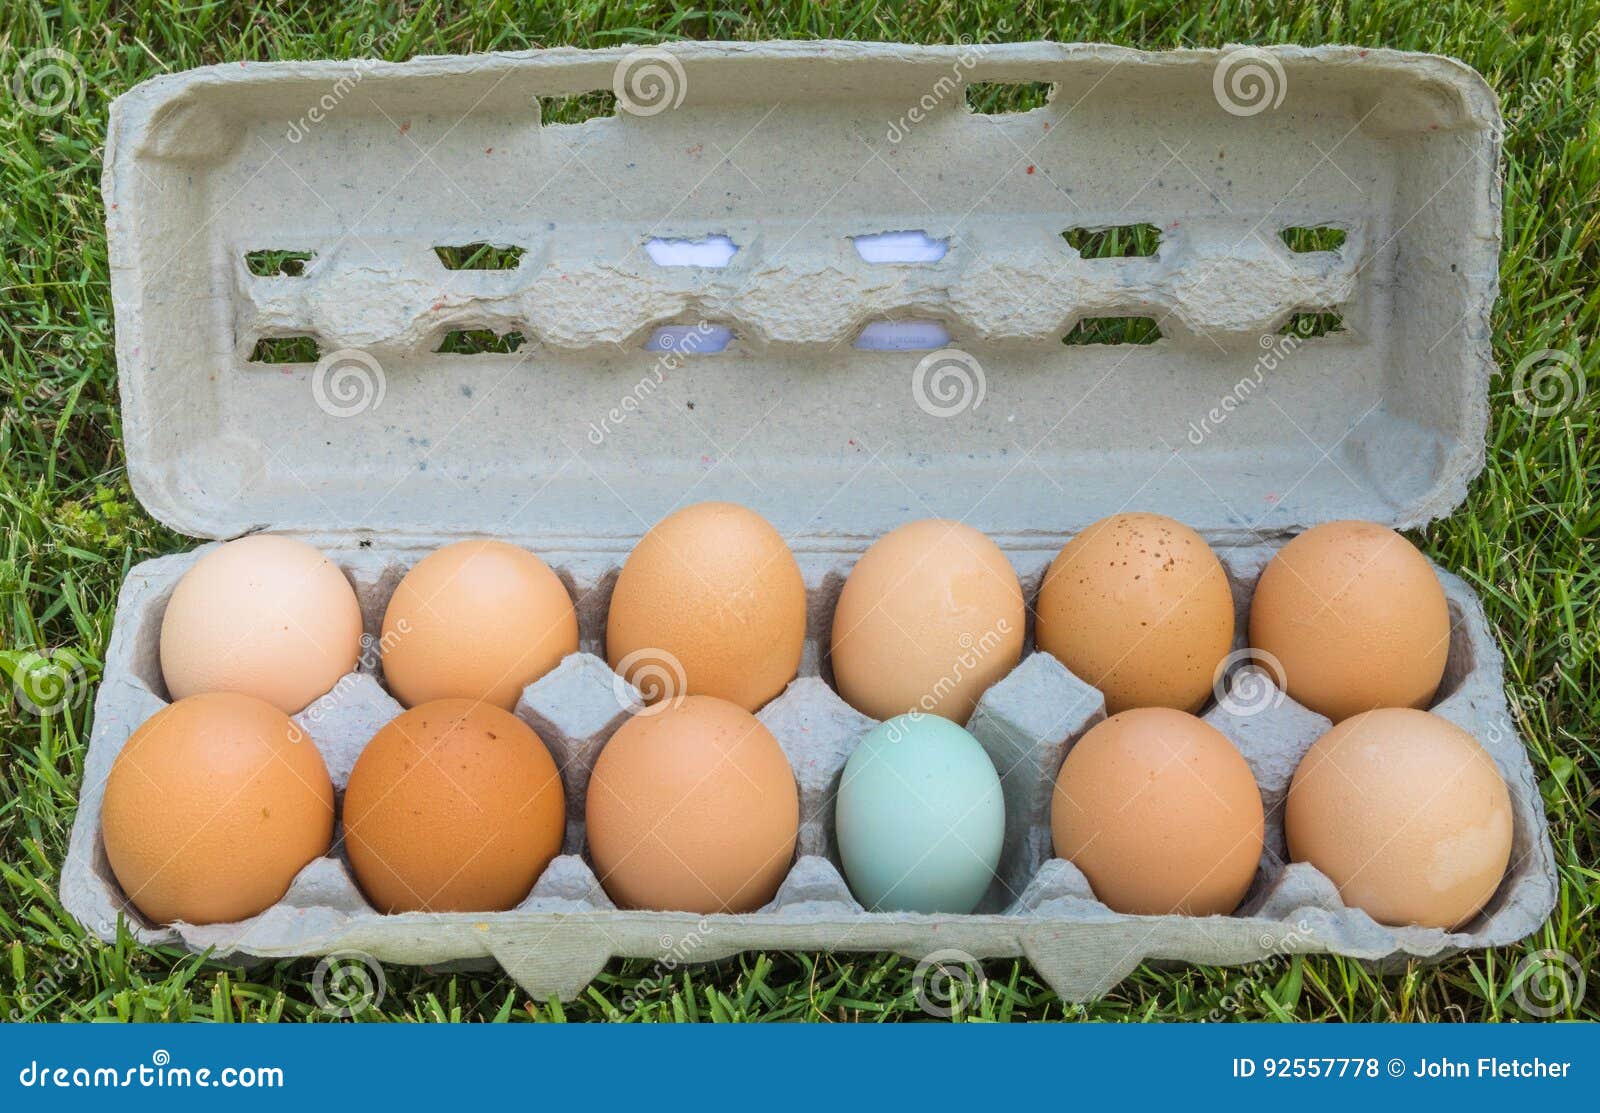 Dutzend Eier Eine Dieser Sachen Ist Nicht Wie Die Anderen Stockfoto Bild Von Eier Sachen